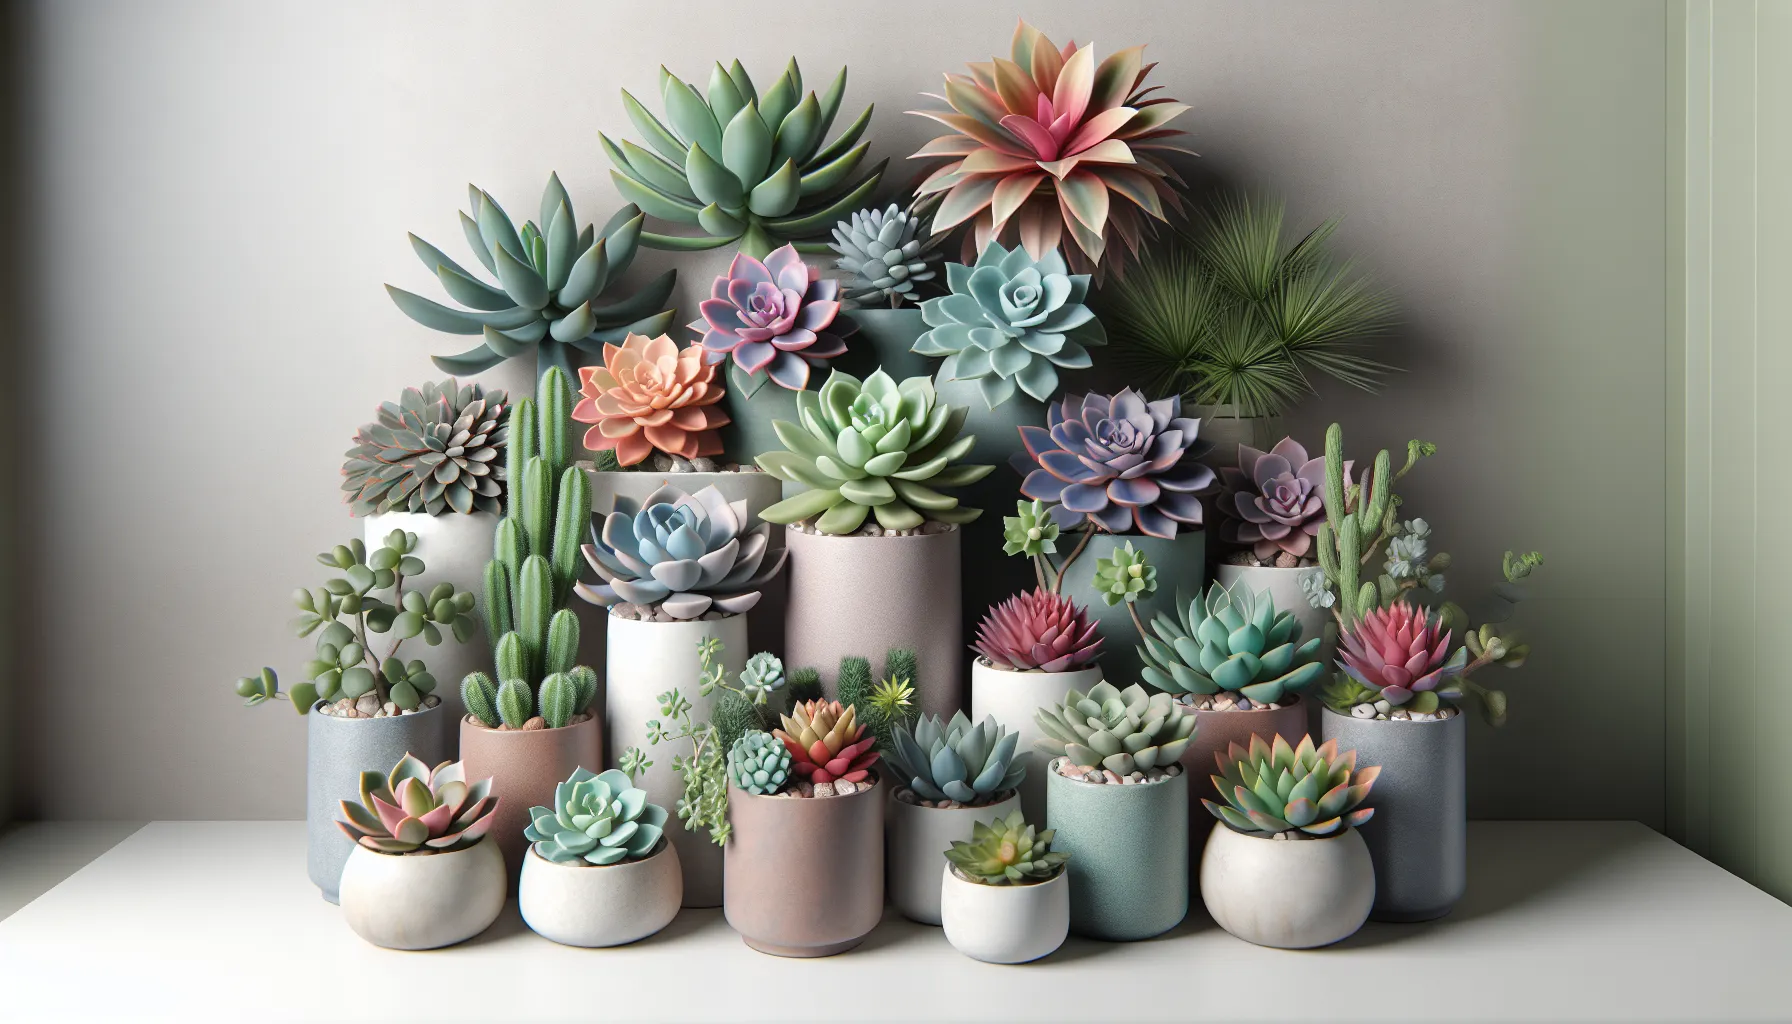 Imagen de varias plantas suculentas de interior dispuestas en macetas y con diferentes formas y colores, perfectas para decorar tu hogar y fáciles de cuidar.